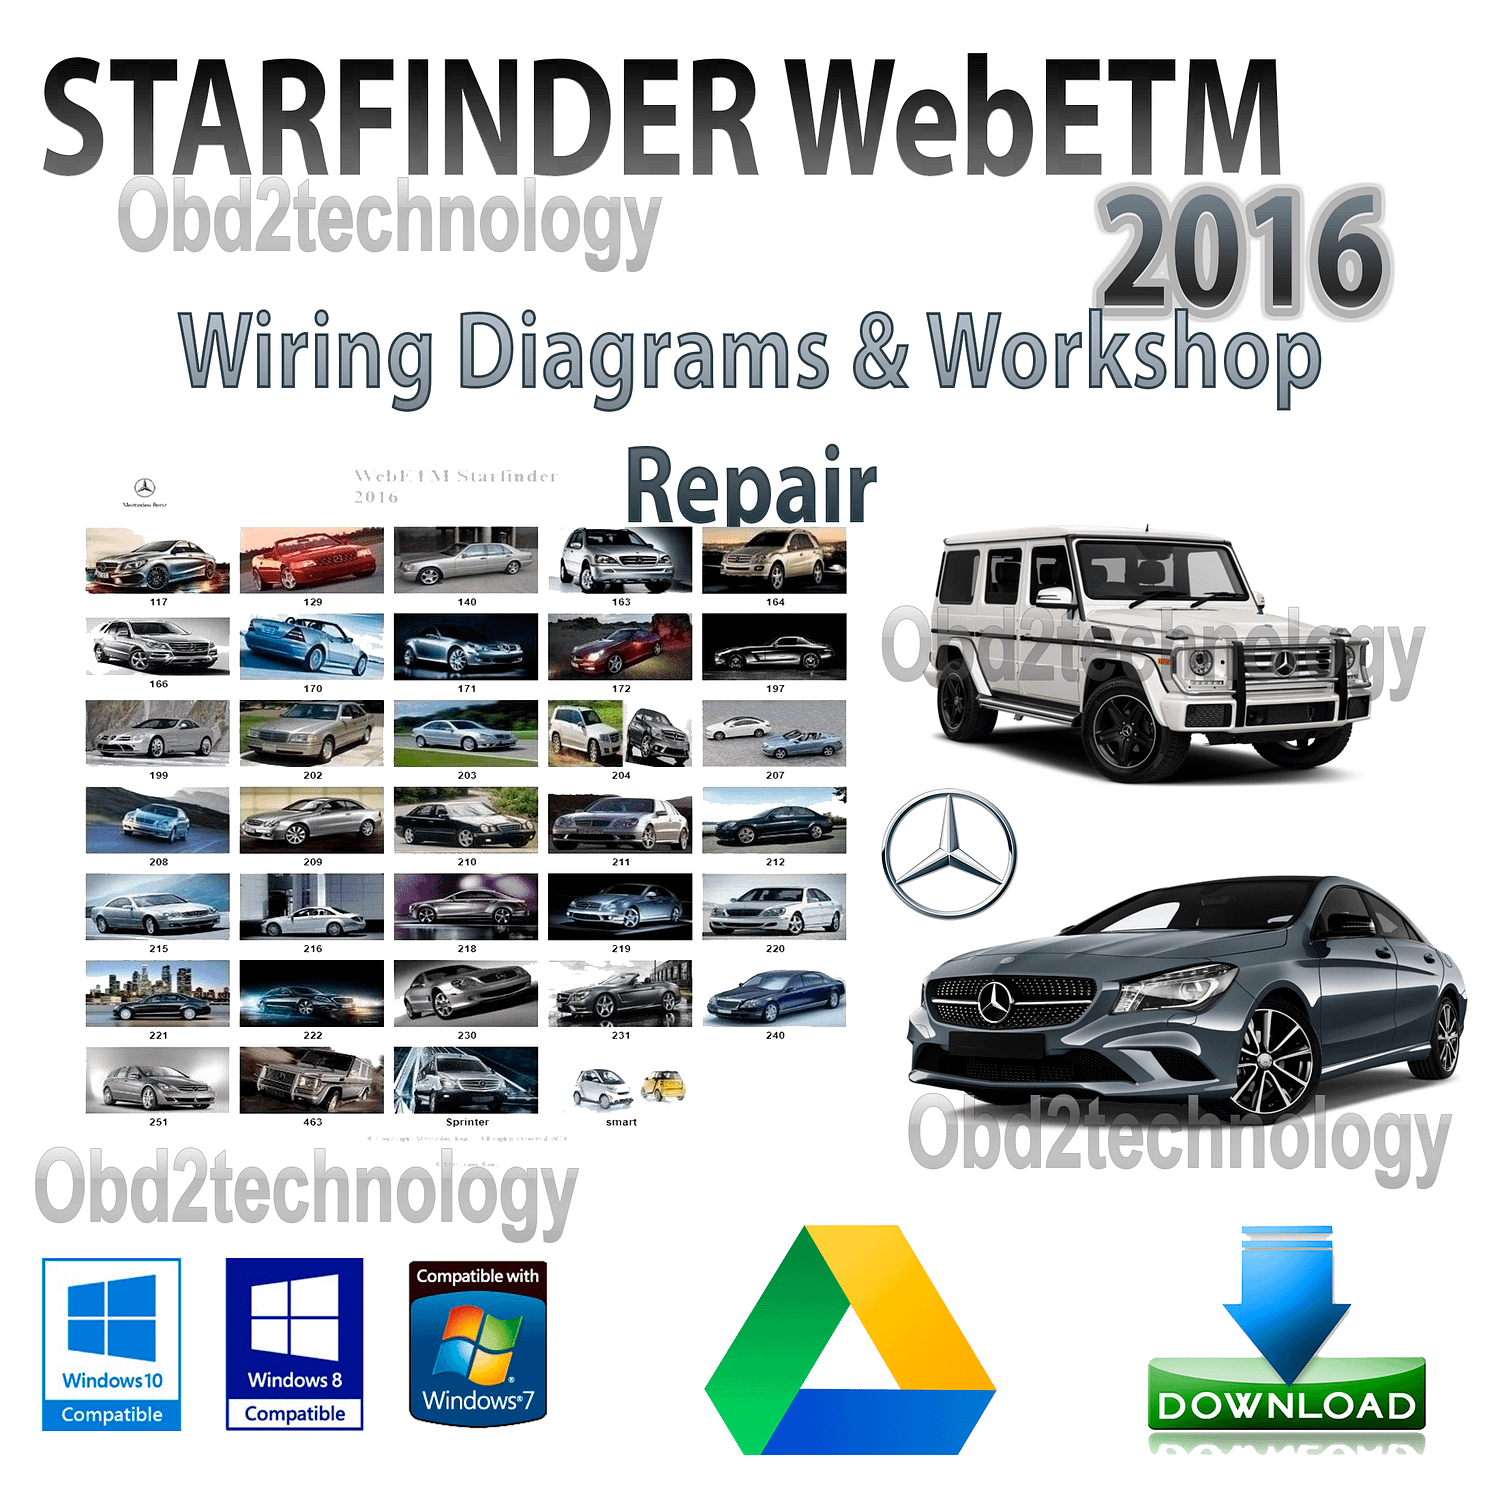 starfinder 2016 webetm mercedes benz usa schaltpläne instant download